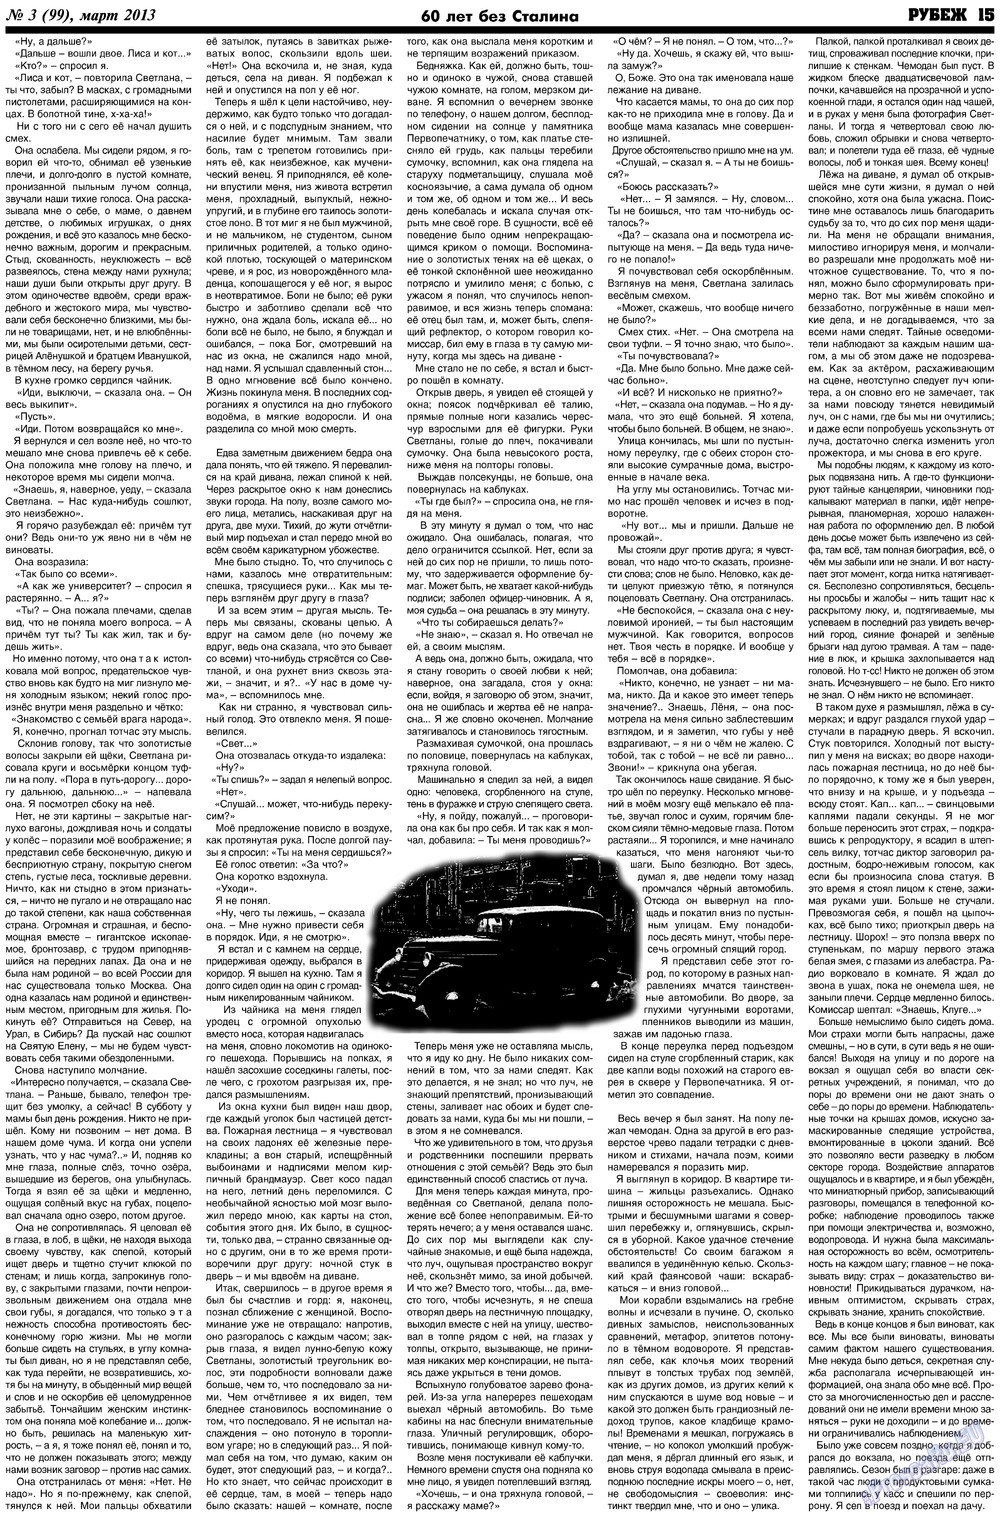 Рубеж (газета). 2013 год, номер 3, стр. 15